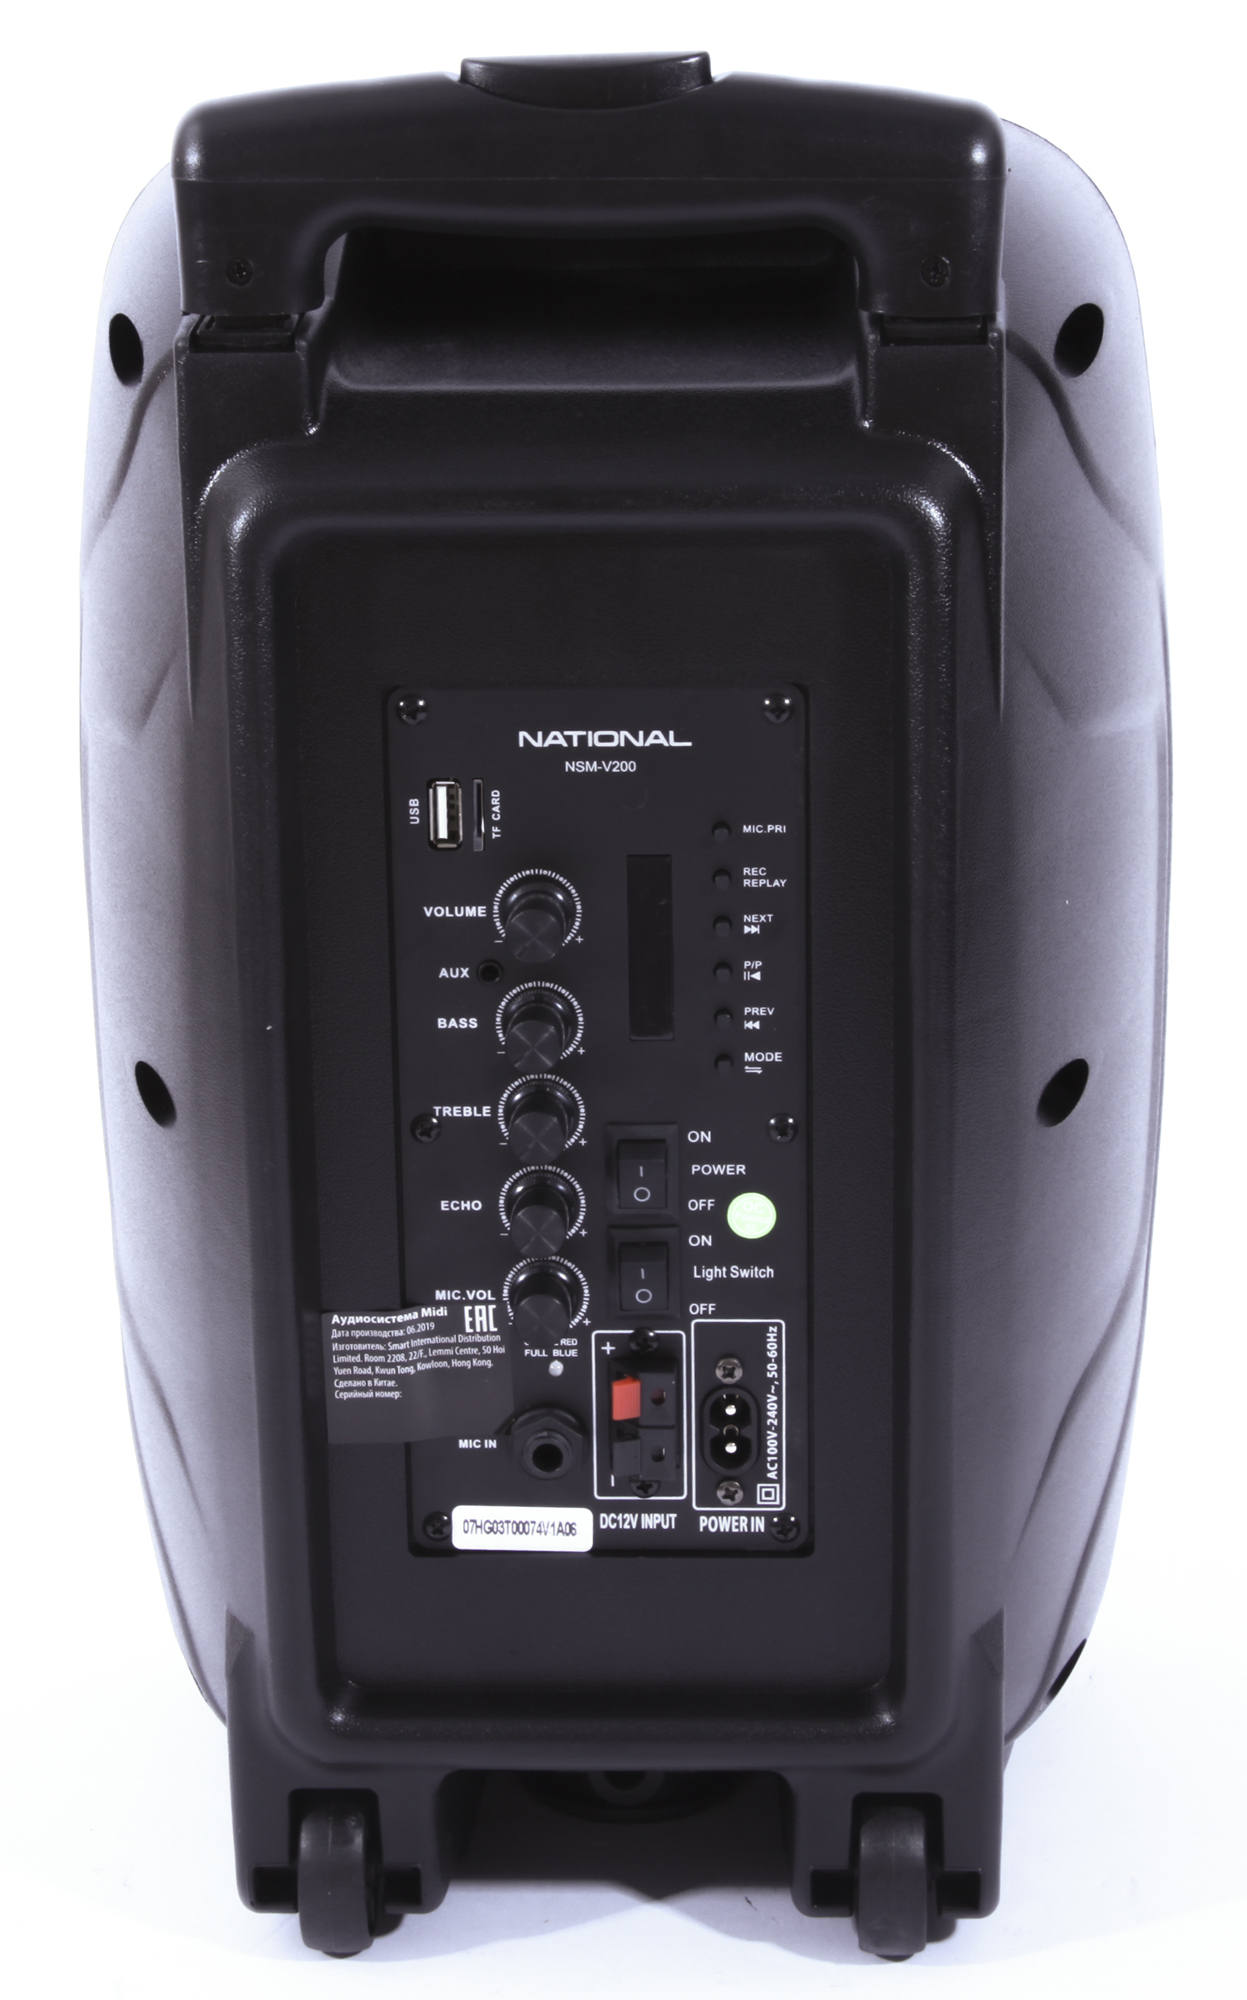 Картинка Аудиосистема NATIONAL NSM-V200 по разумной цене купить в интернет магазине mall.su